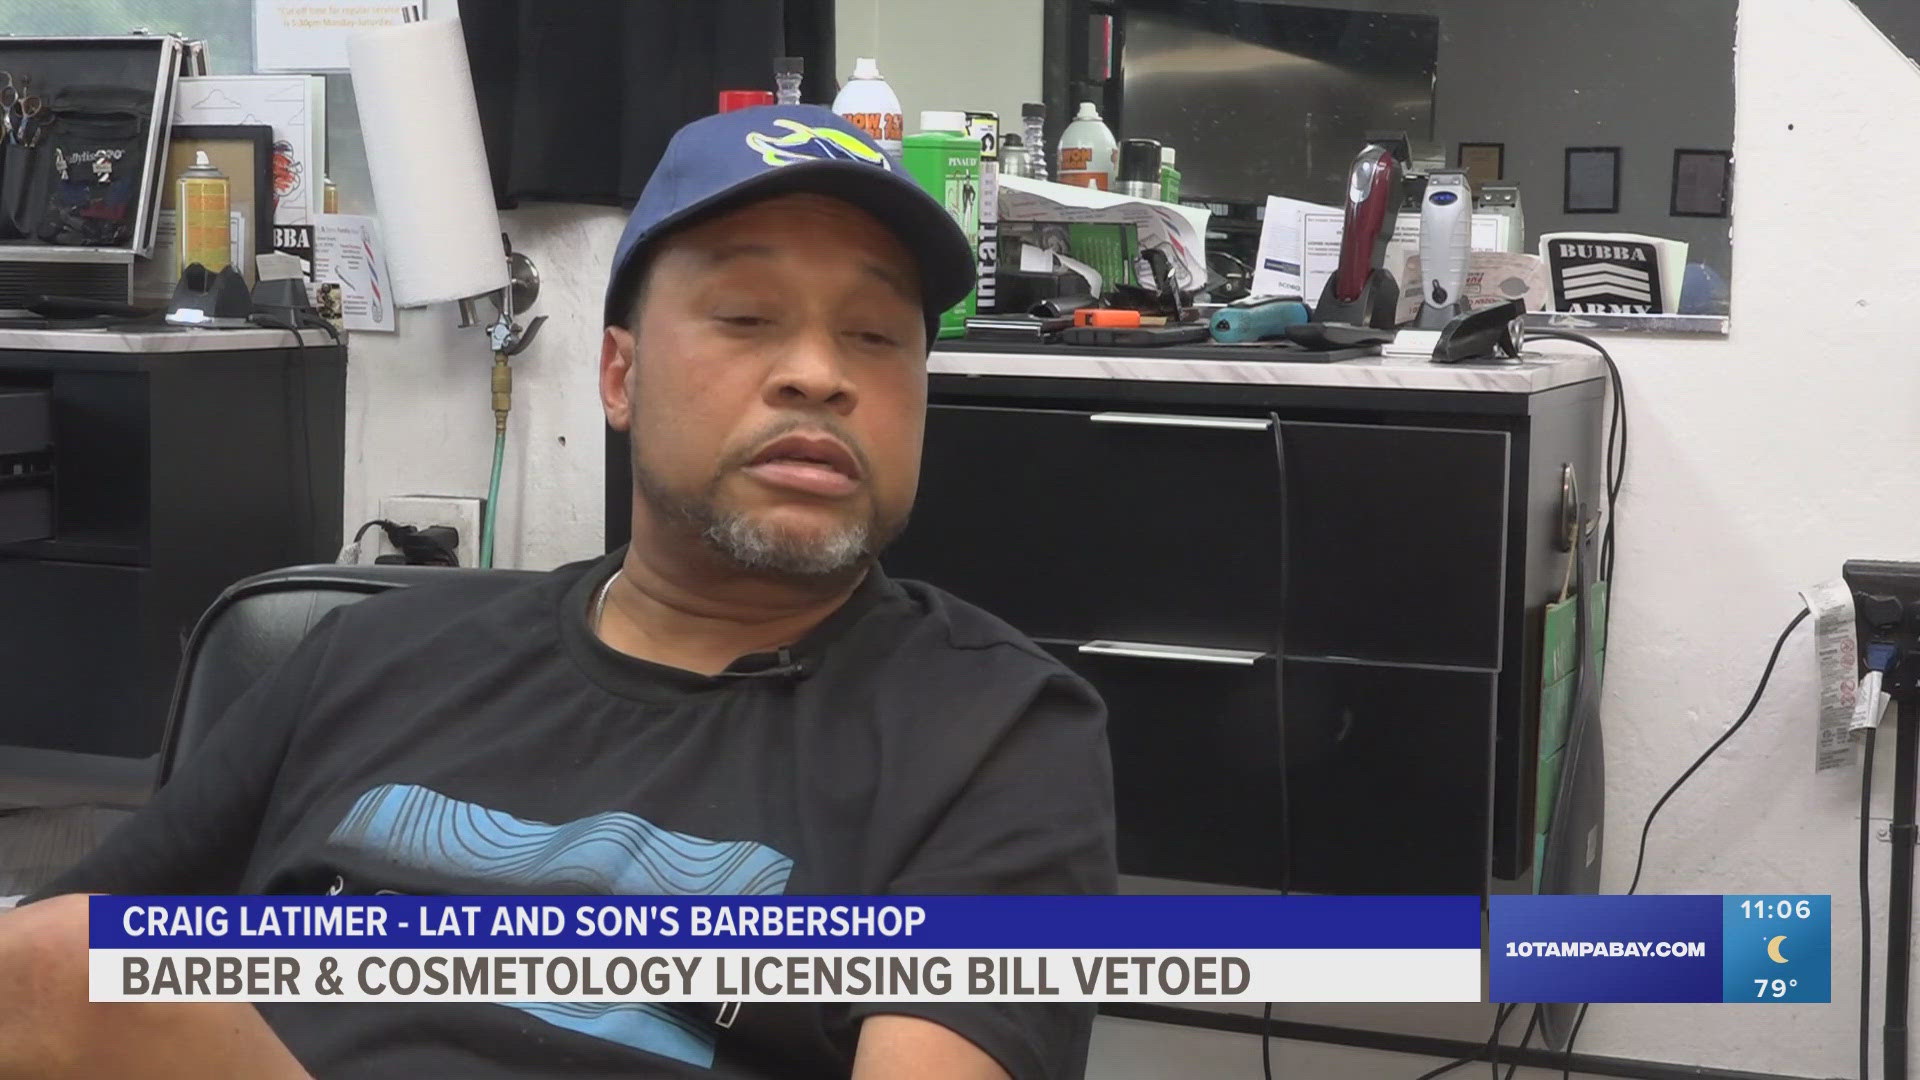 Local barber speaks out after DeSantis vetoes licensing bill